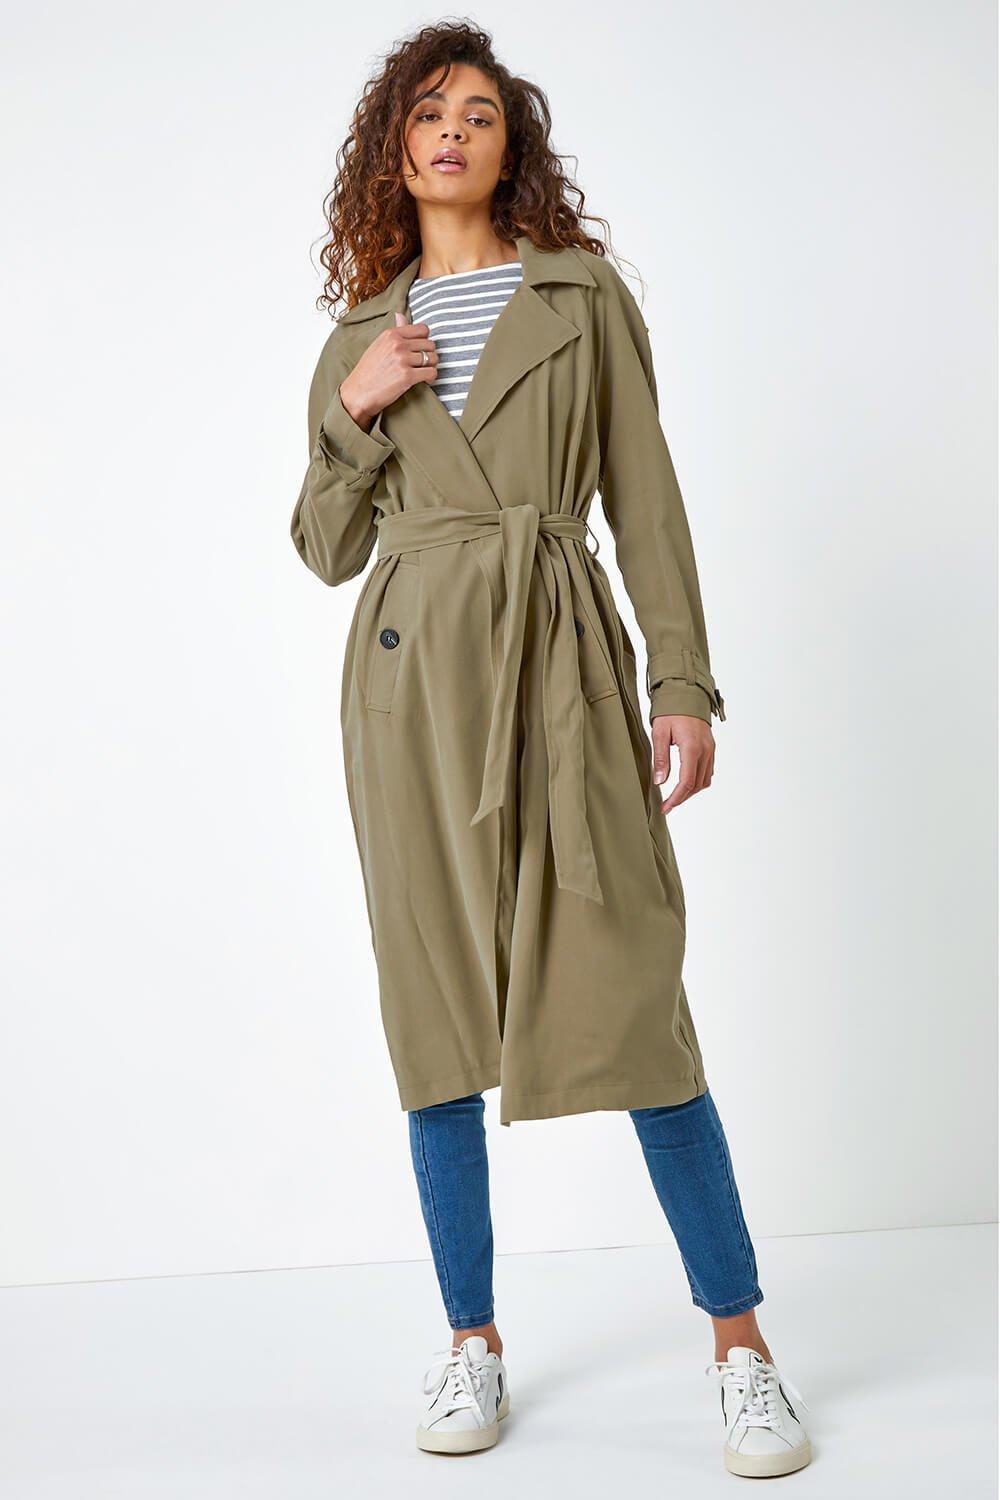 Duster Coats & Jackets for Women | Debenhams